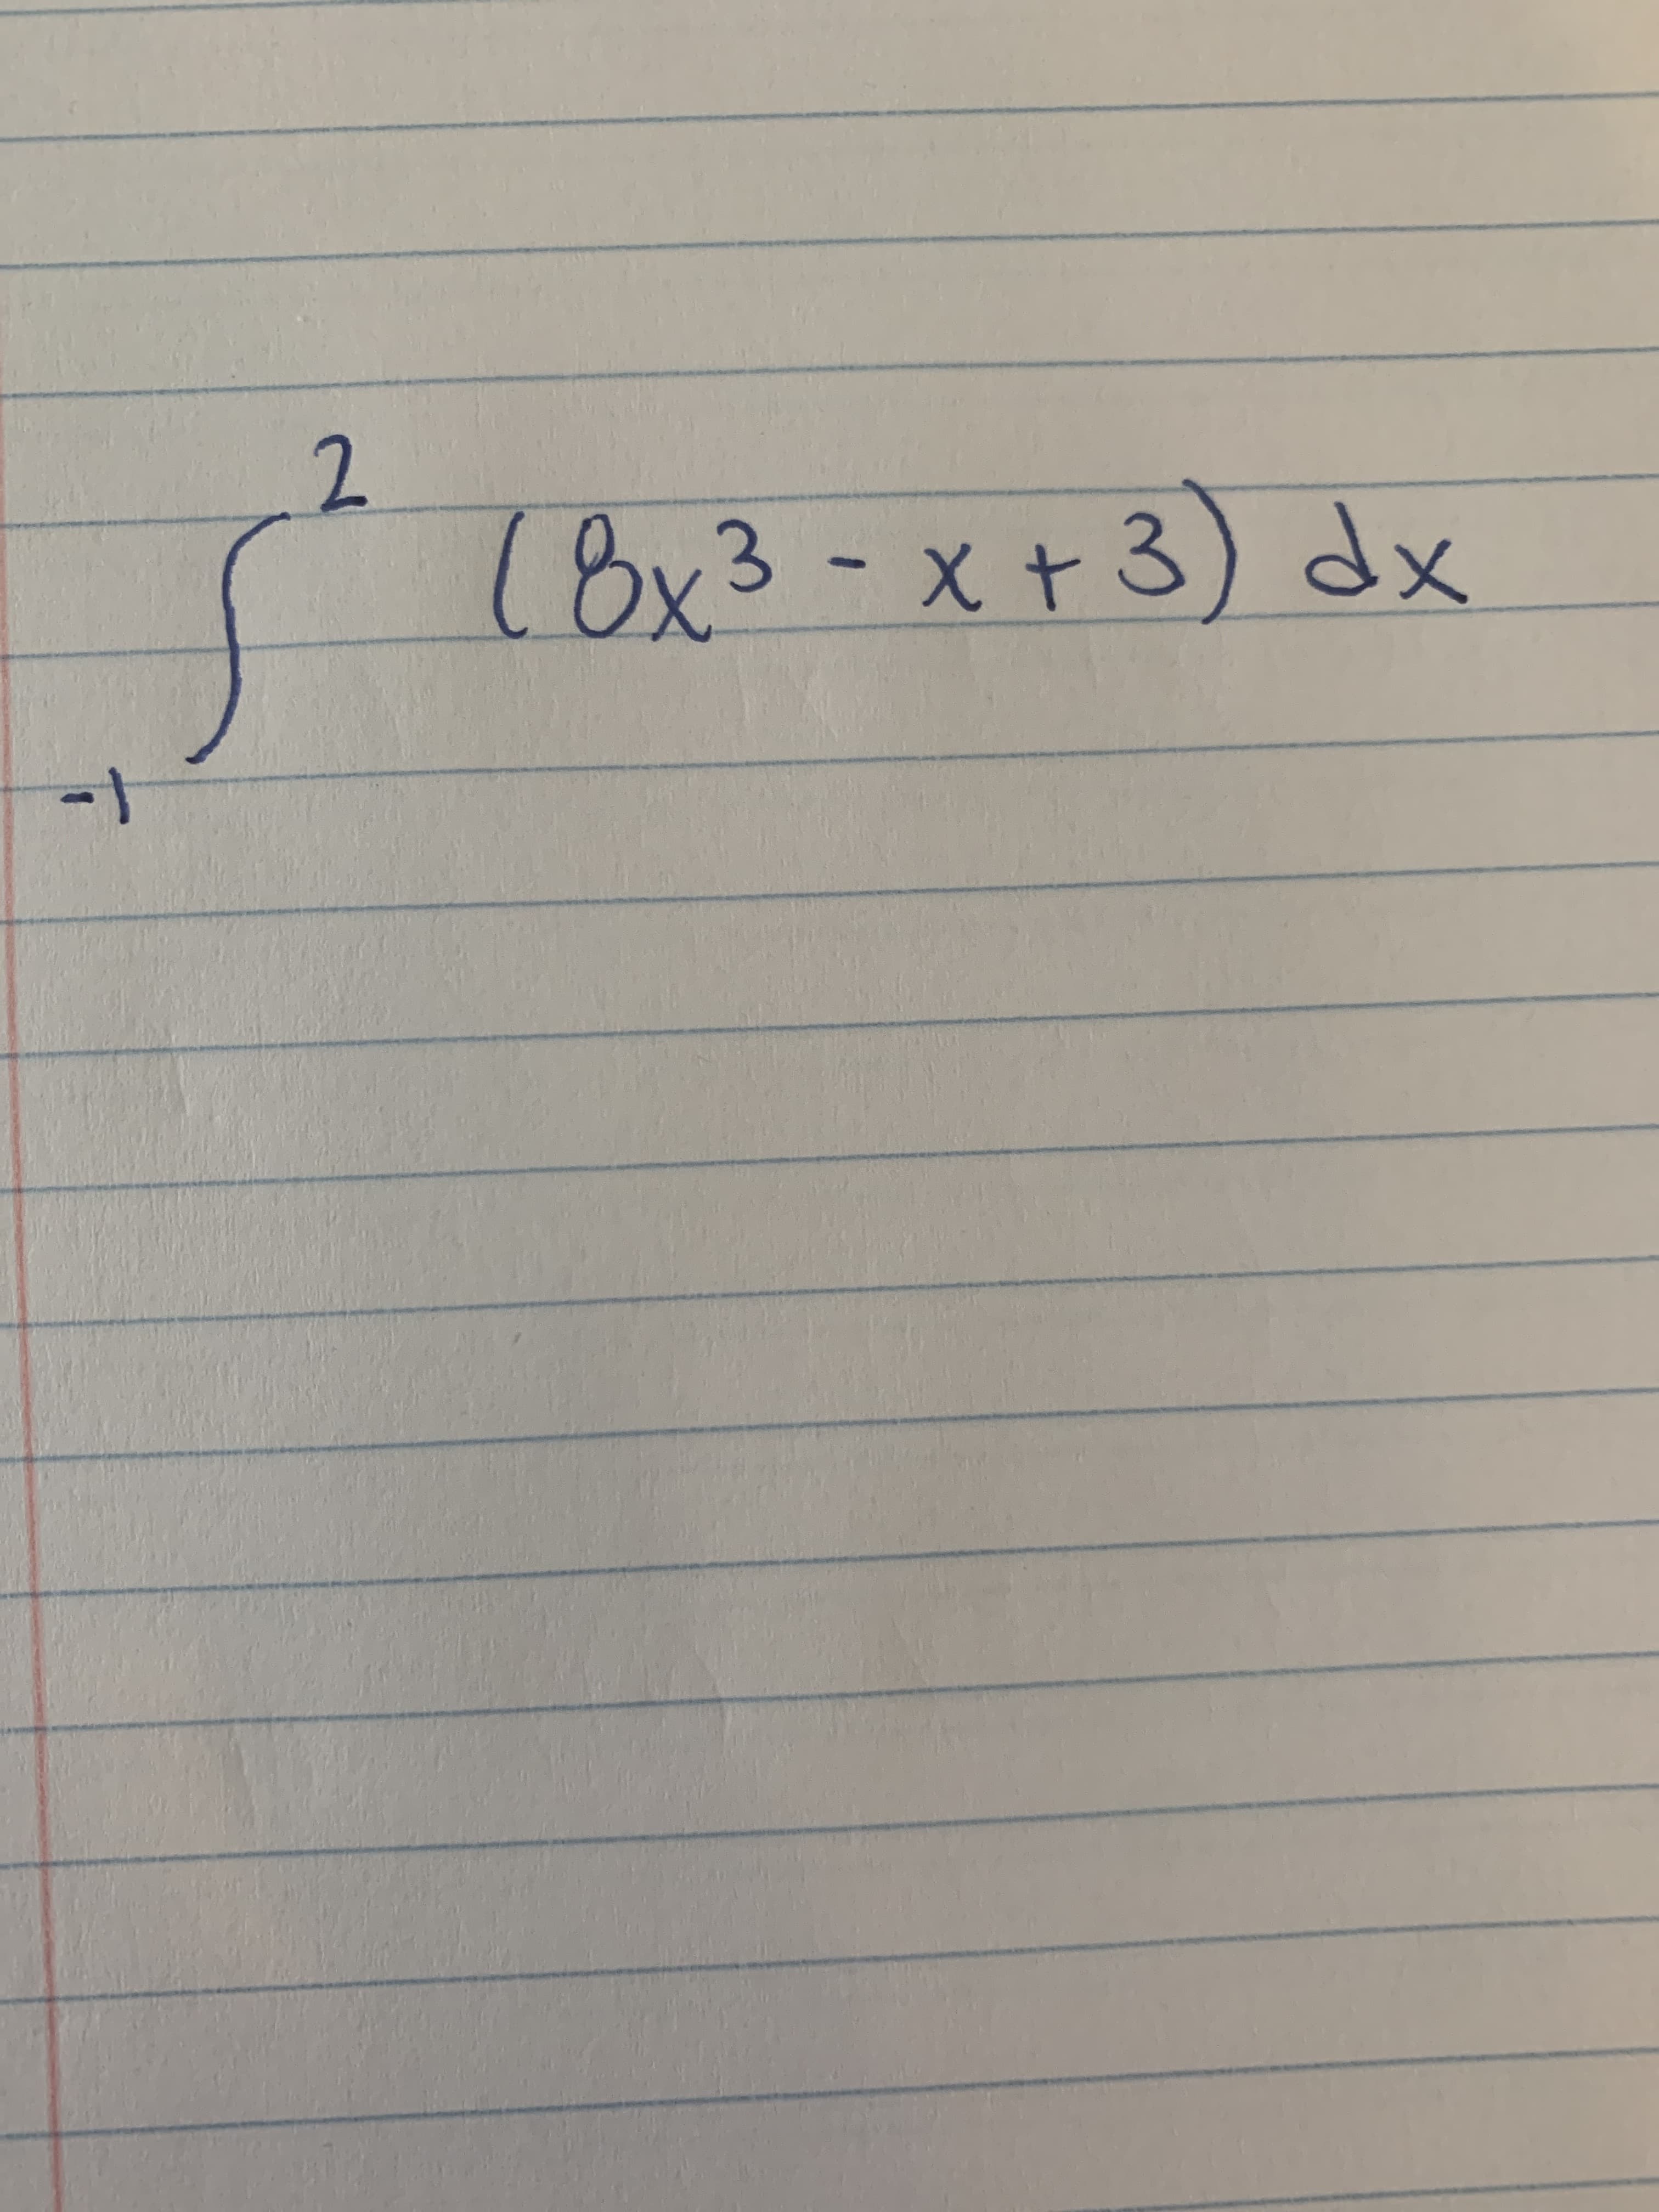 (8x3-x+3)
dx
